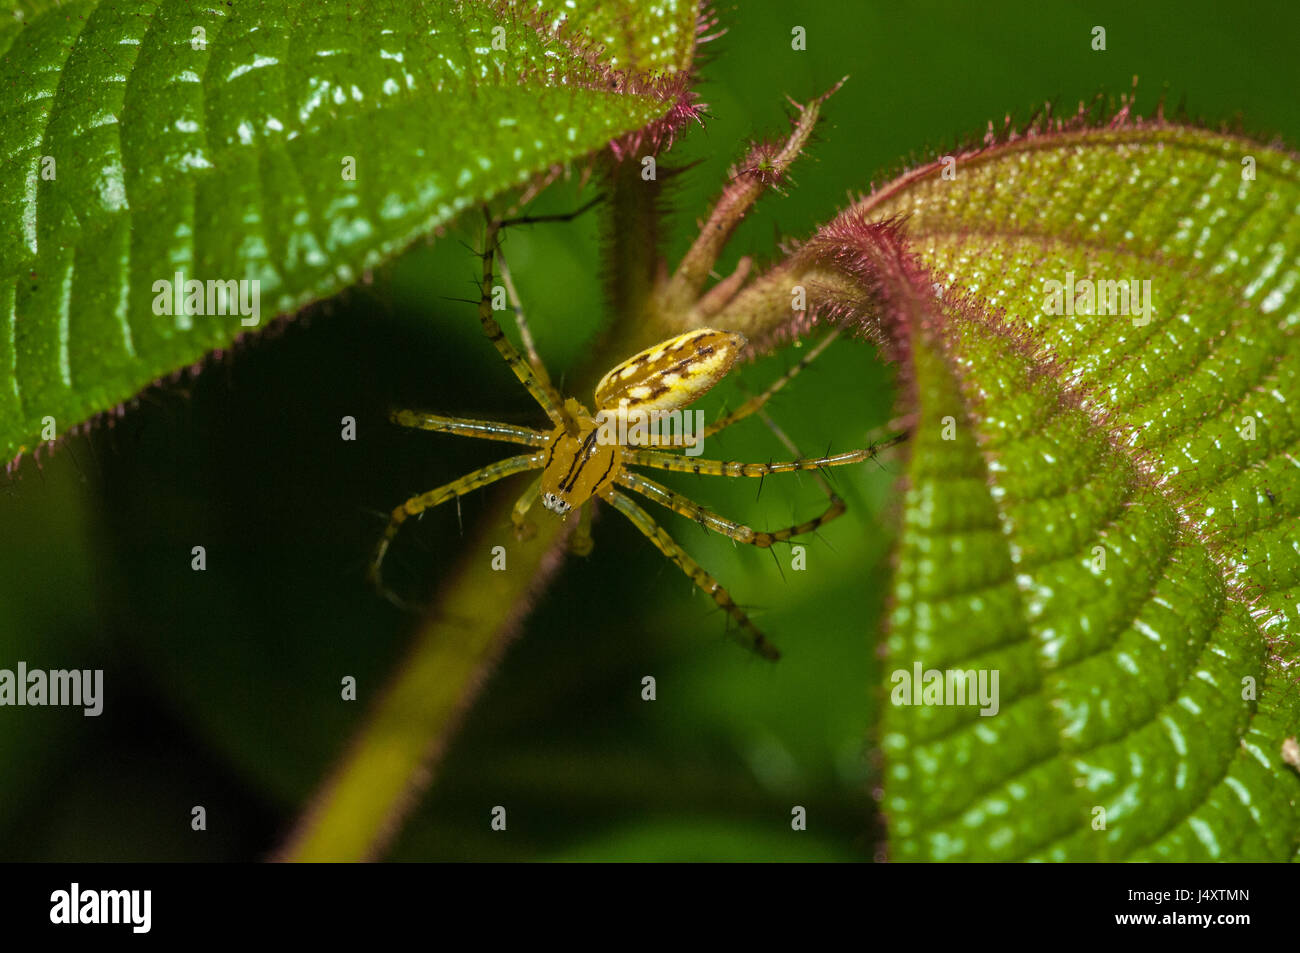 Nicht identifizierte gelbe Spinne sitzt zwischen zwei Blätter im  Amazonas-Regenwald Stockfotografie - Alamy